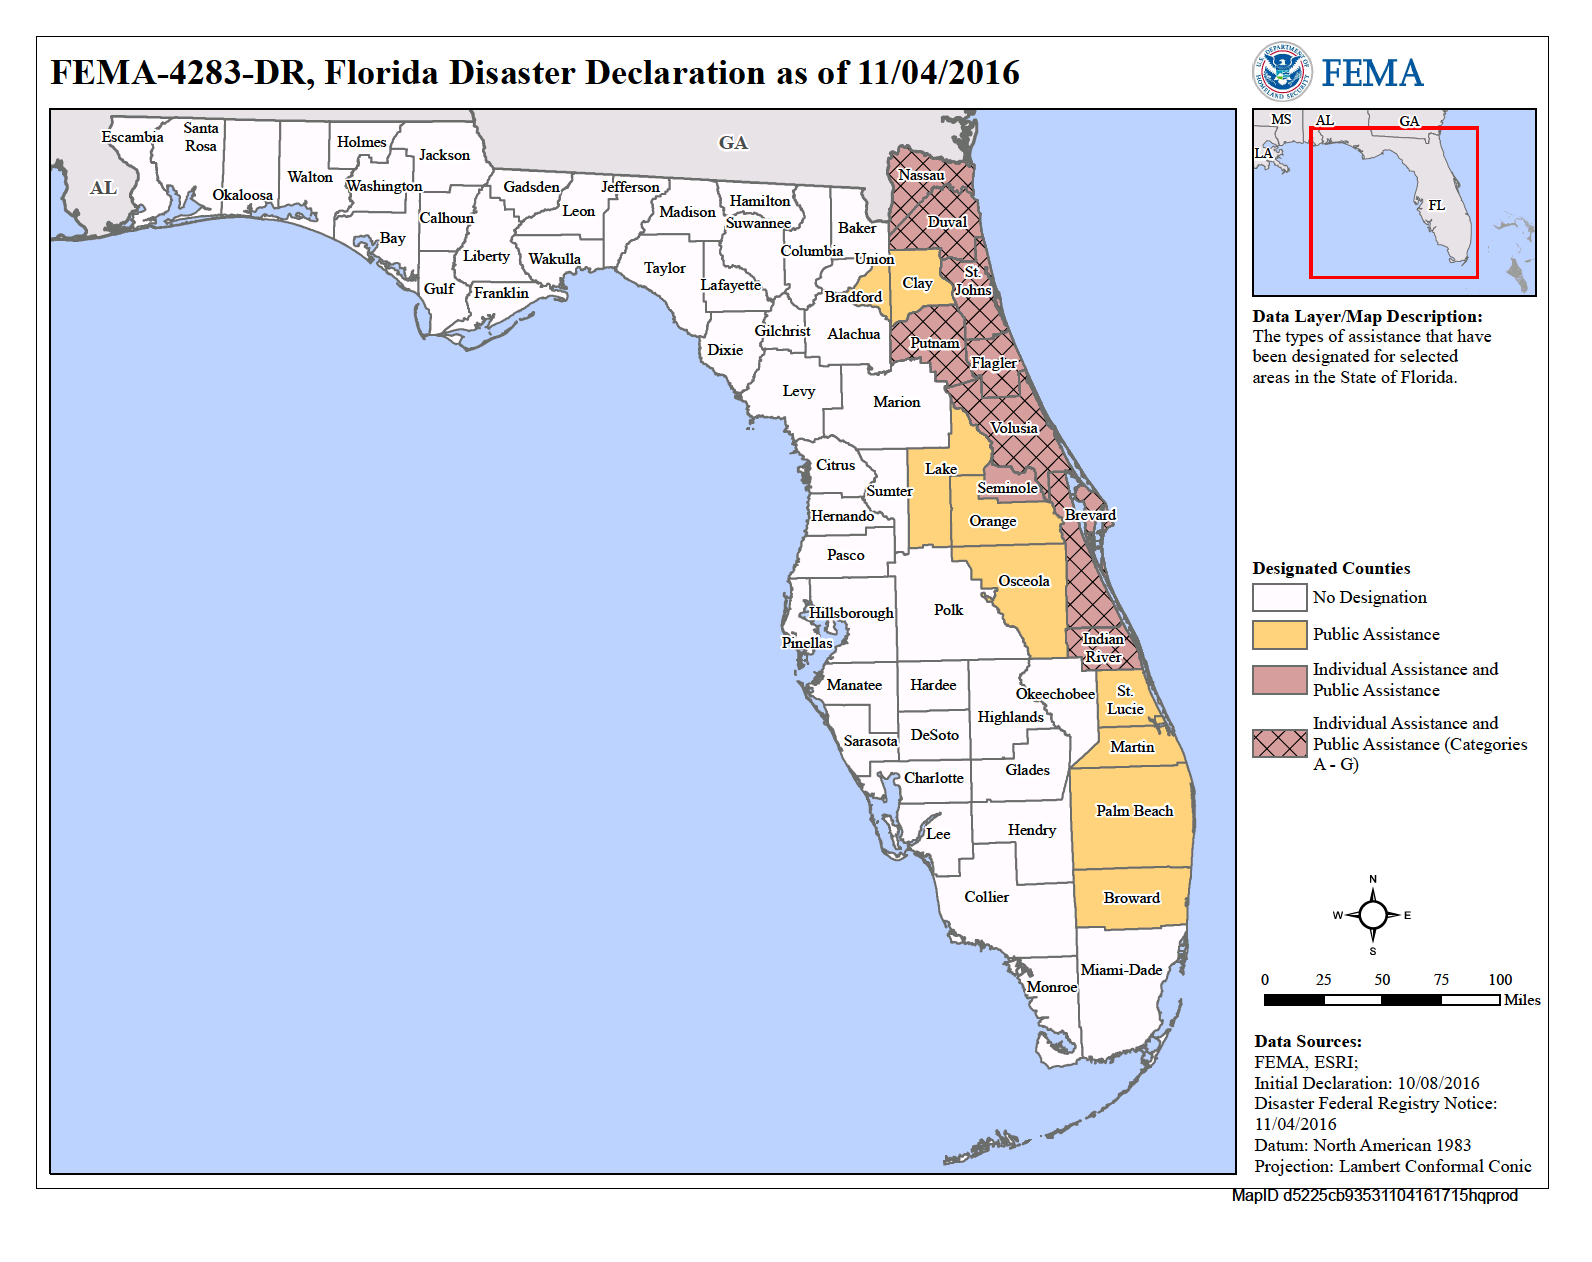 Florida Hurricane Matthew Dr 4283 Fema Gov